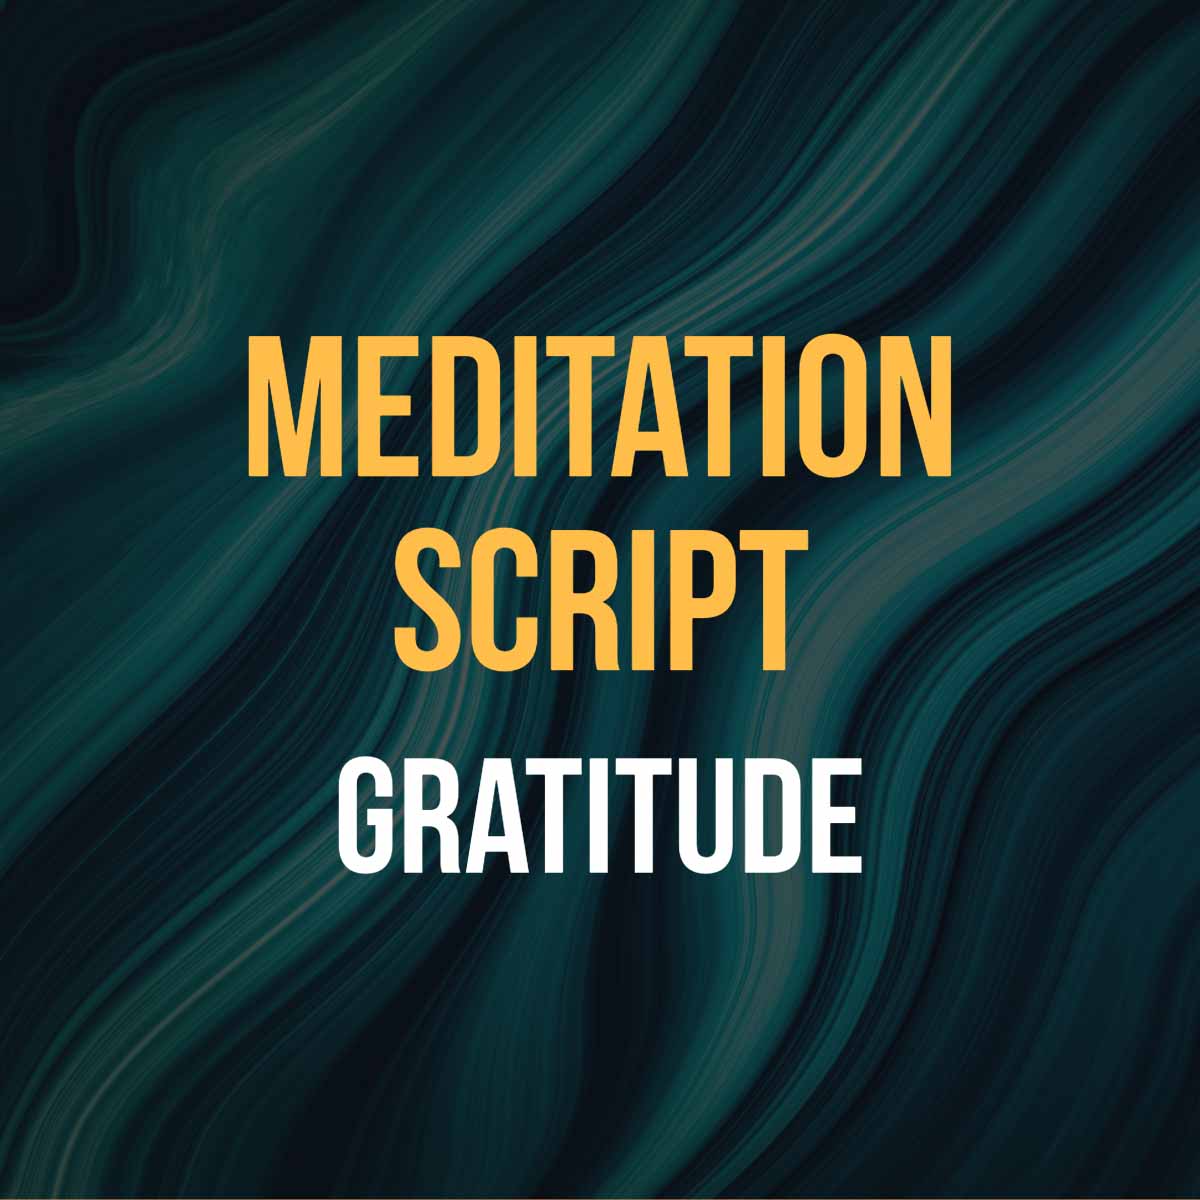 Short Gratitude Meditation Script - MyRelaxation.Online